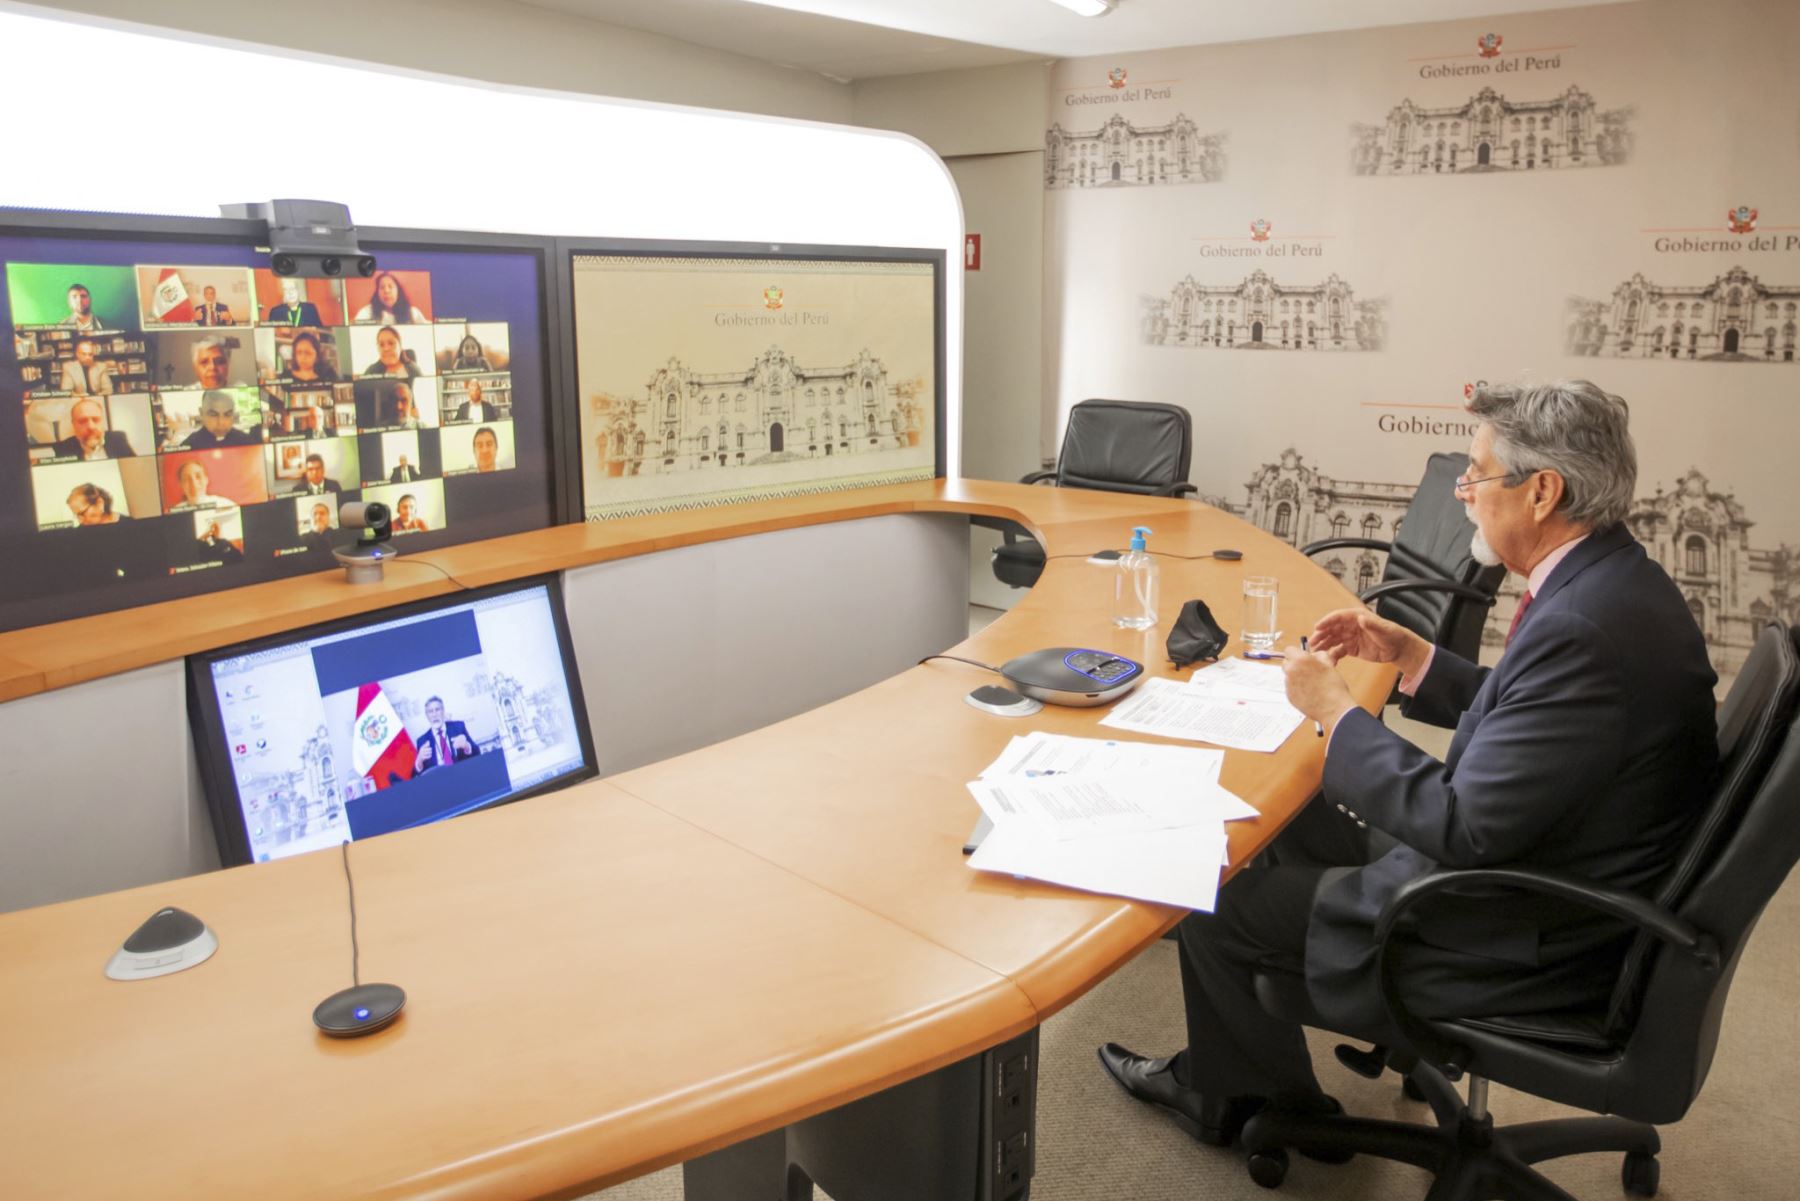 El presidente de la República, Francisco Sagasti, recibió el saludo de los líderes religiosos del país, durante una reunión virtual con el Consejo Interreligioso del Perú, que promueve y moviliza la cooperación interreligiosa, mediante la acción por la justicia, paz y solidaridad. Foto: ANDINA/Prensa Presidencia